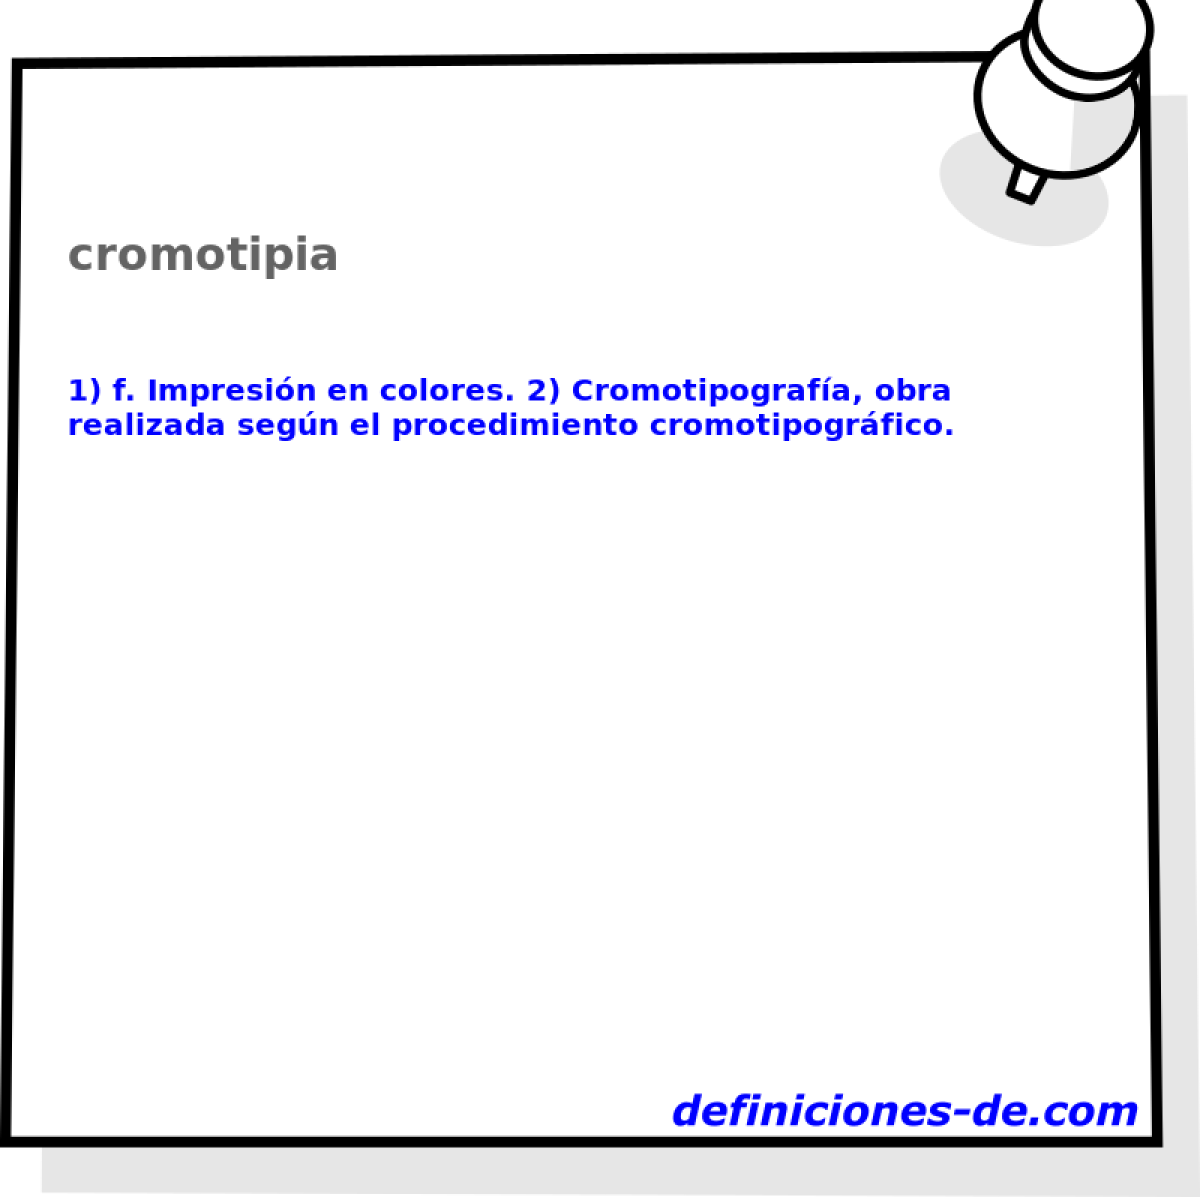 cromotipia 